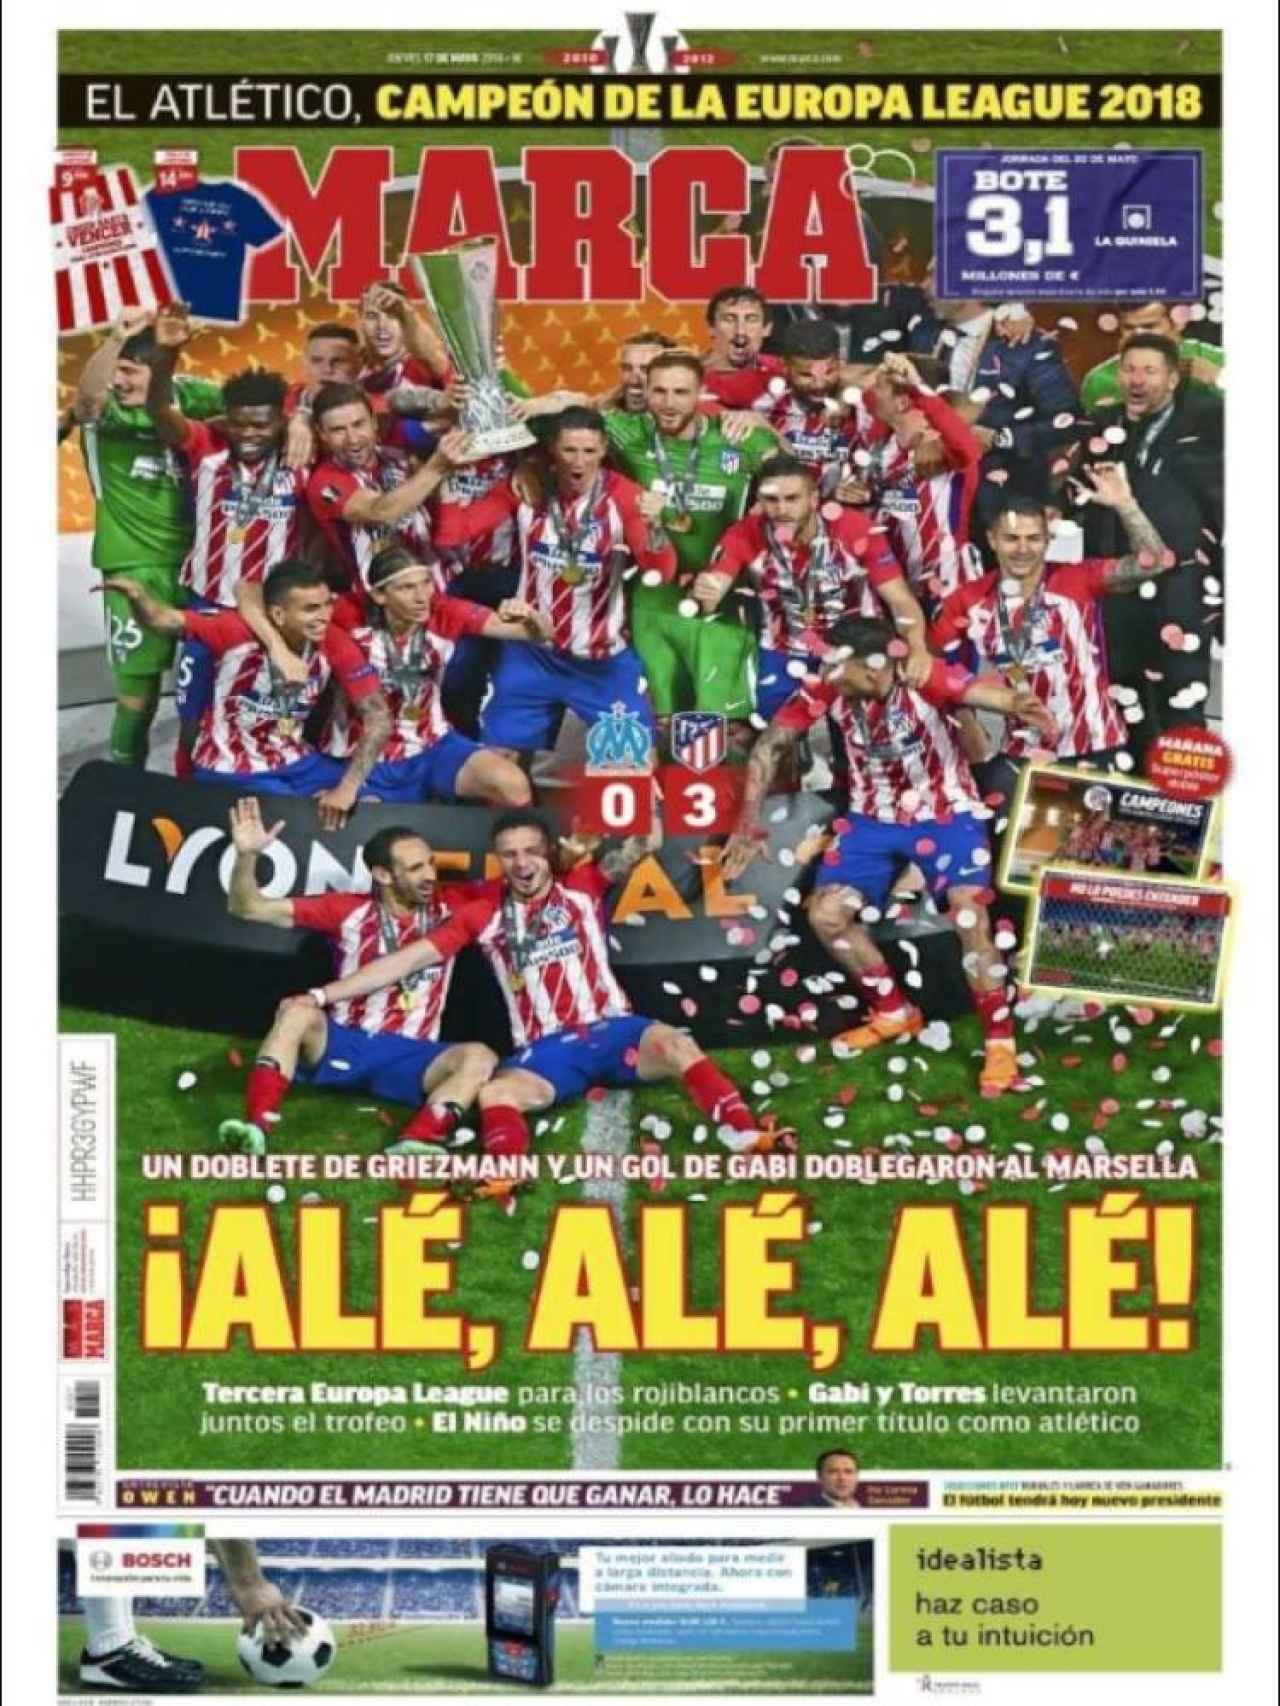  El Atlético de Madrid, campeón de la UEFA Europa League 2018 - Página 6 Deportes_307980504_78178389_1280x1706